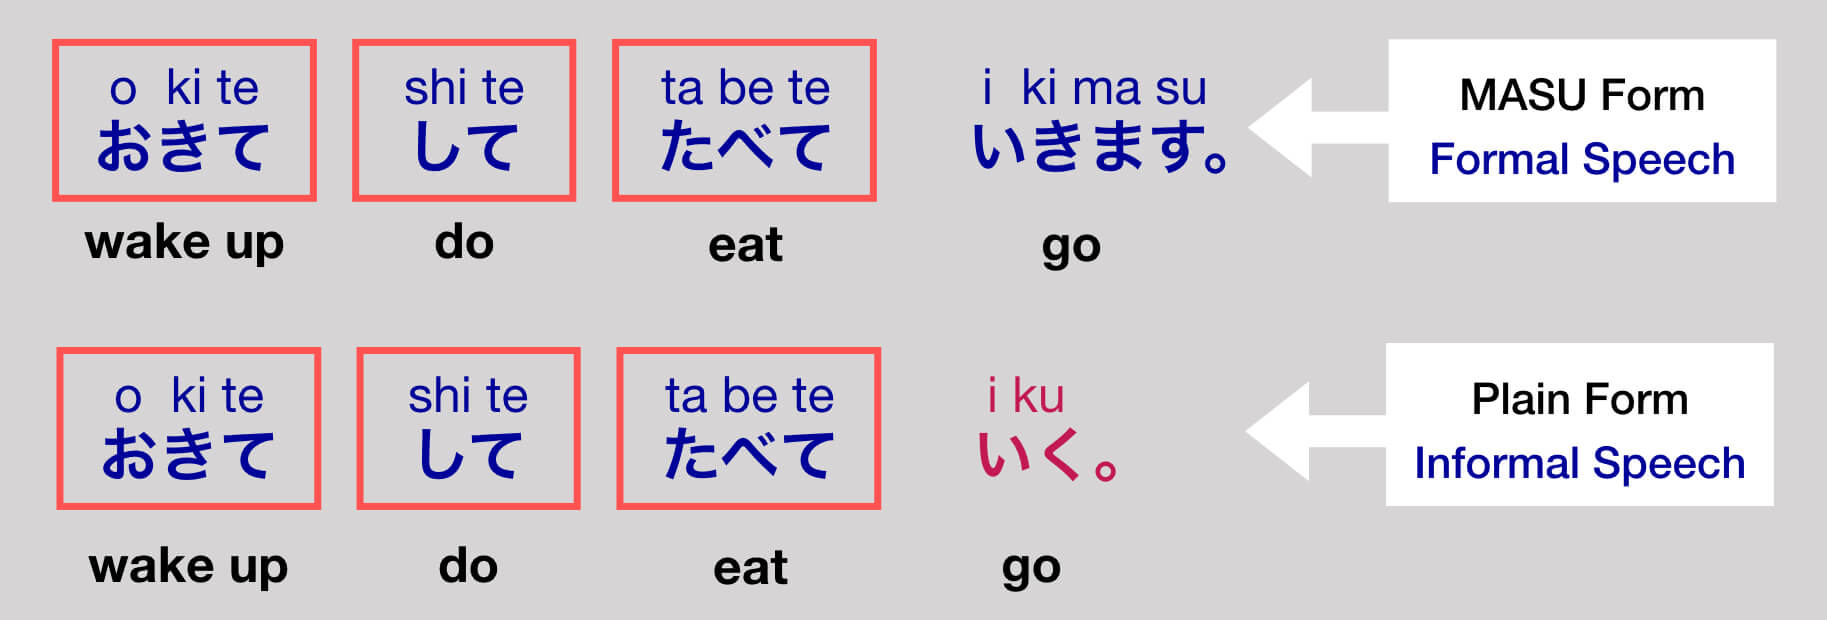 te-form-in-japanese-verb-conjugation-linkup-nippon